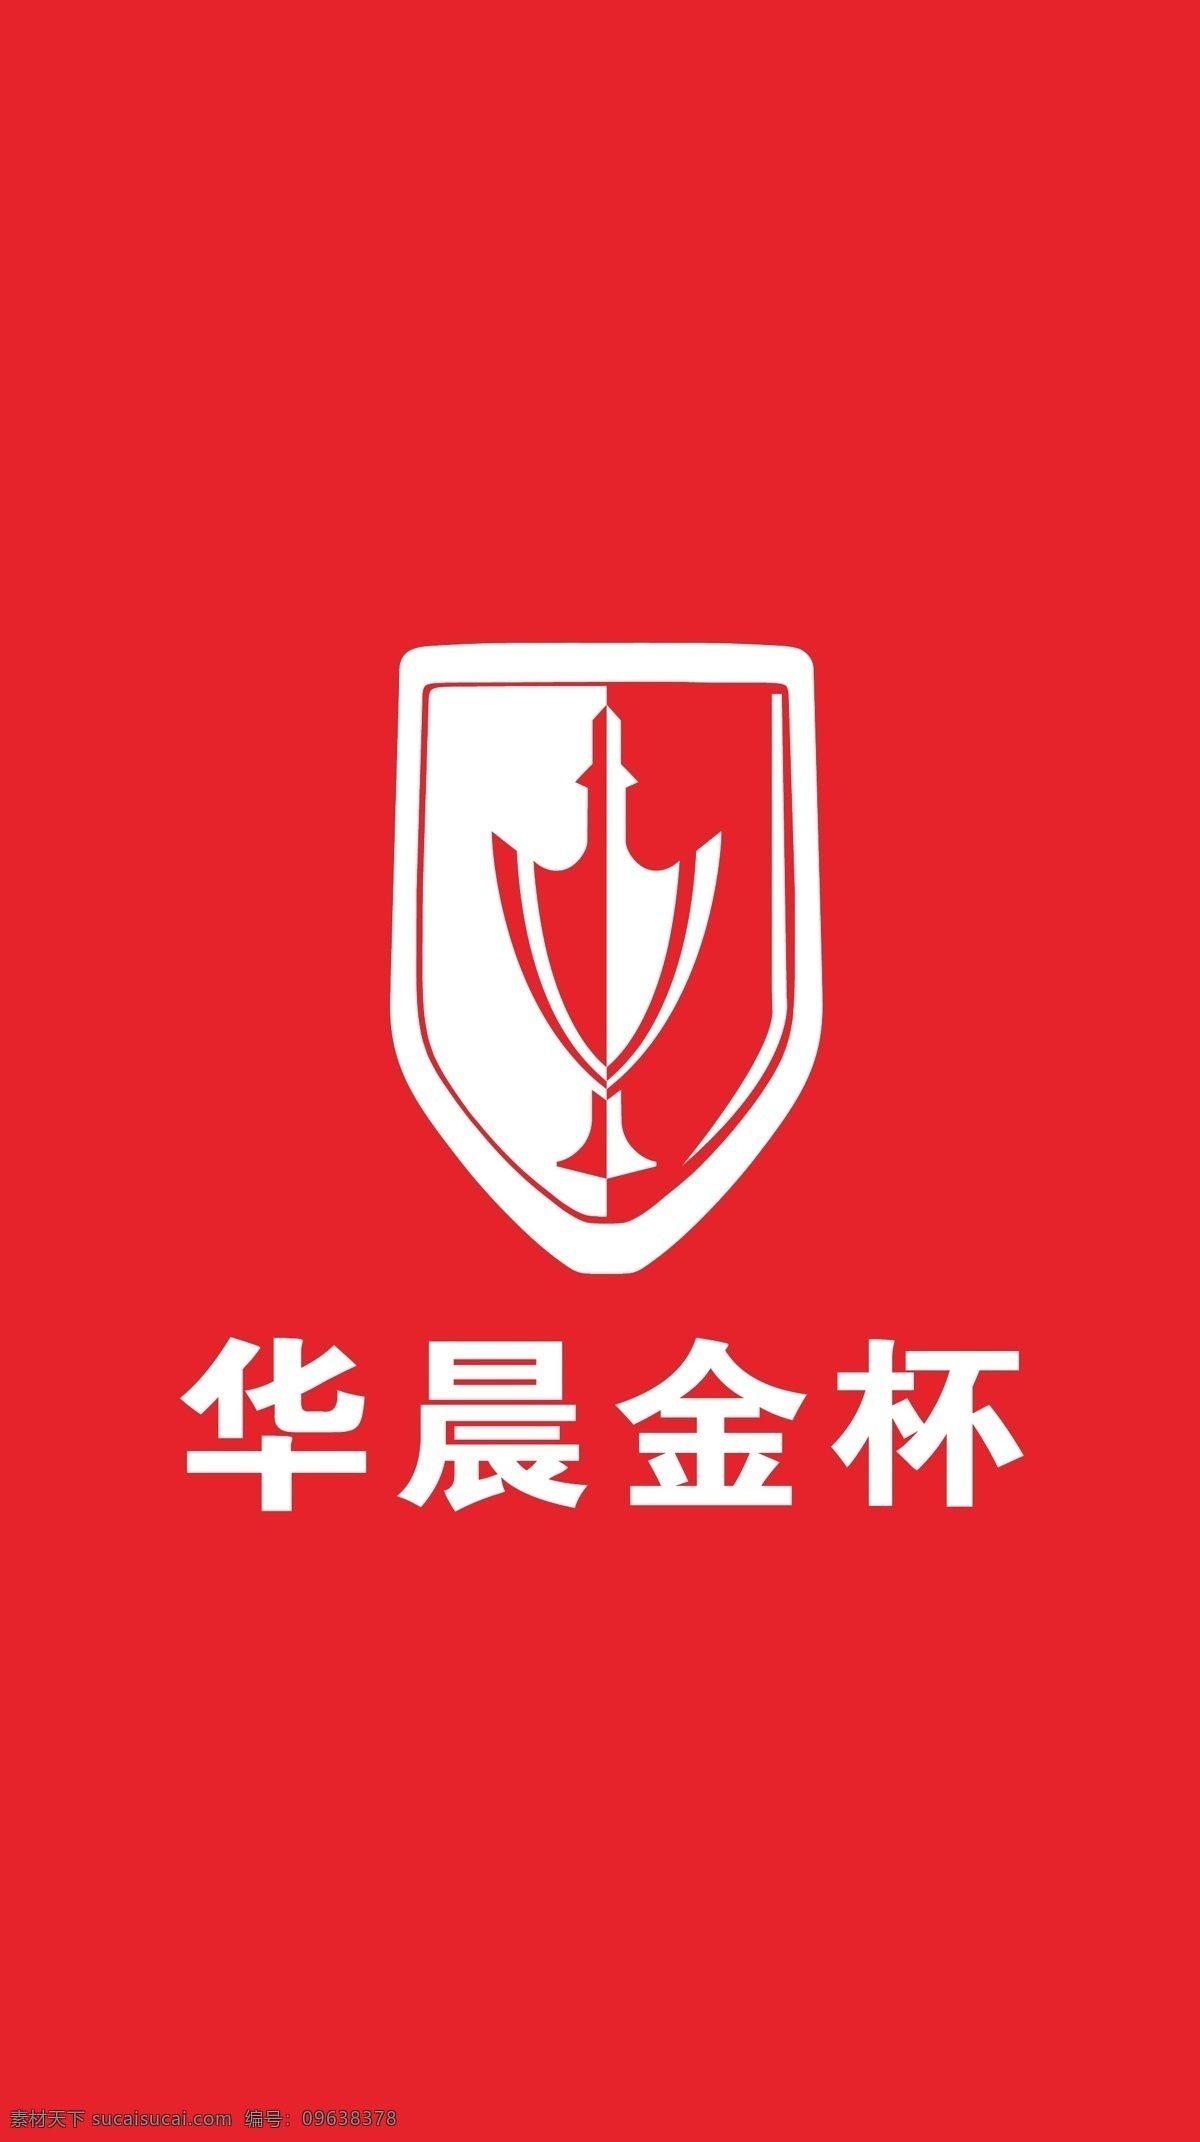 华晨金杯 logo 红旗 龙门架 海报